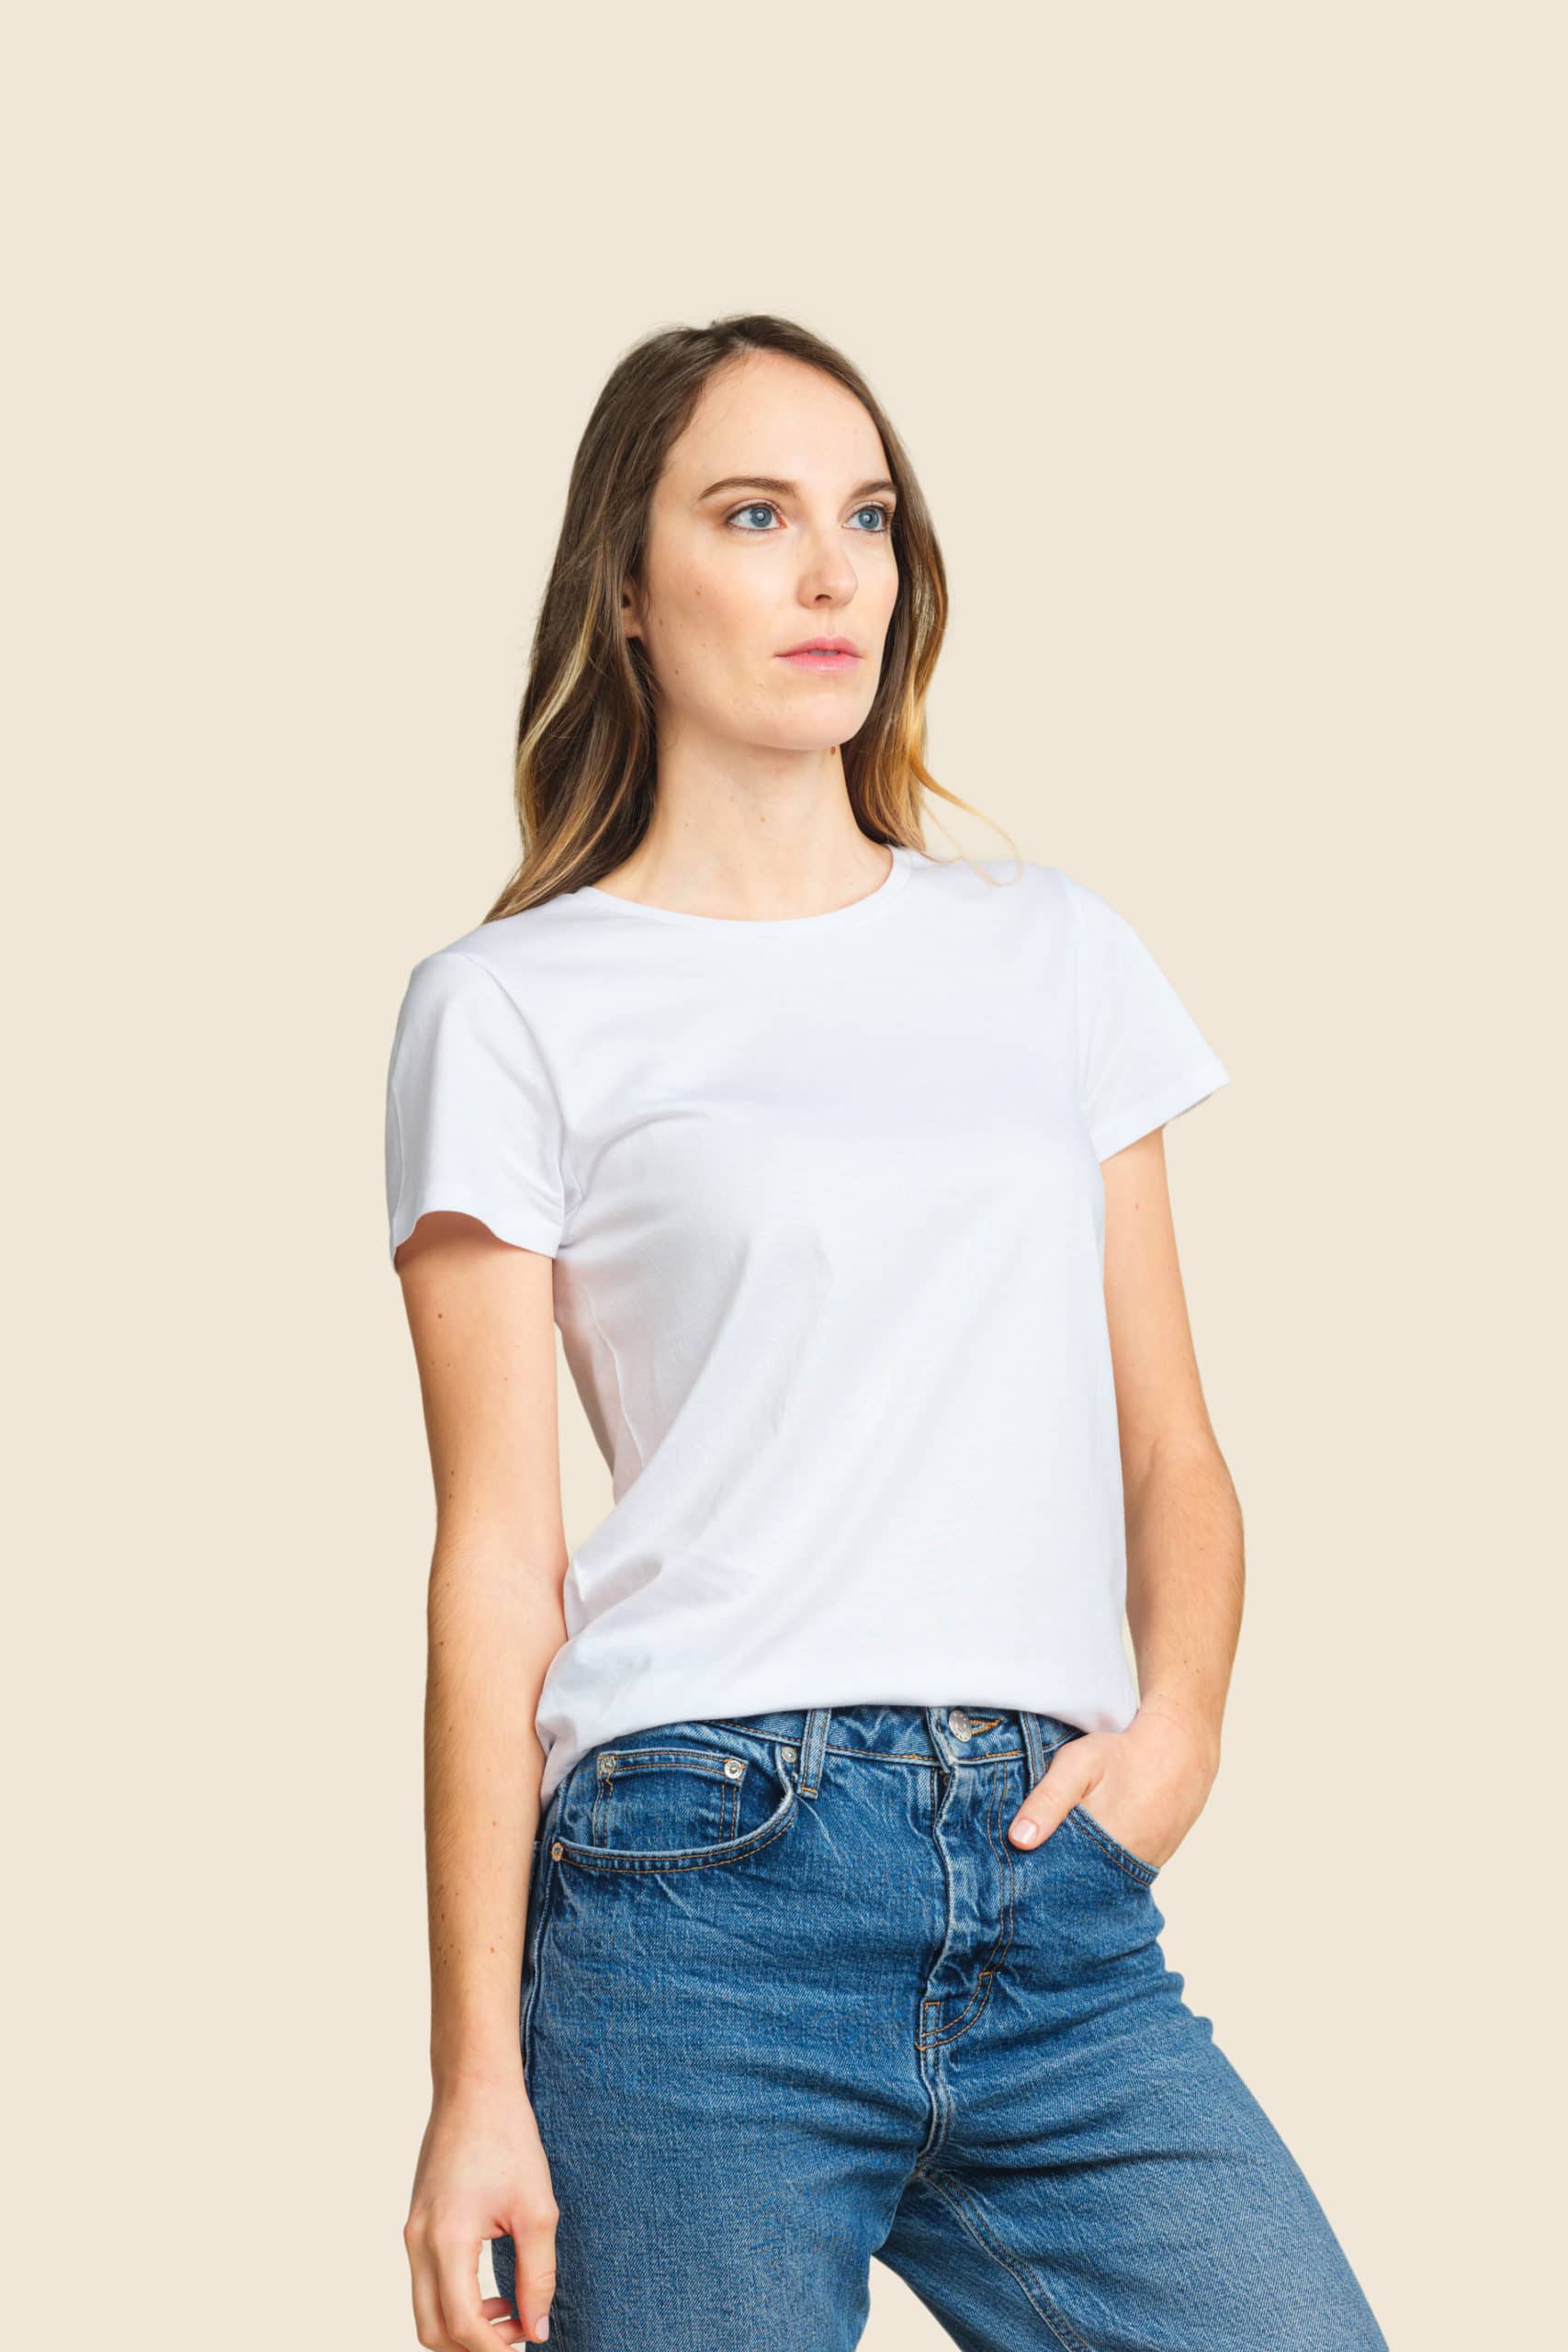 t-shirt bio léger blanc femme personnalisable - Icone Design